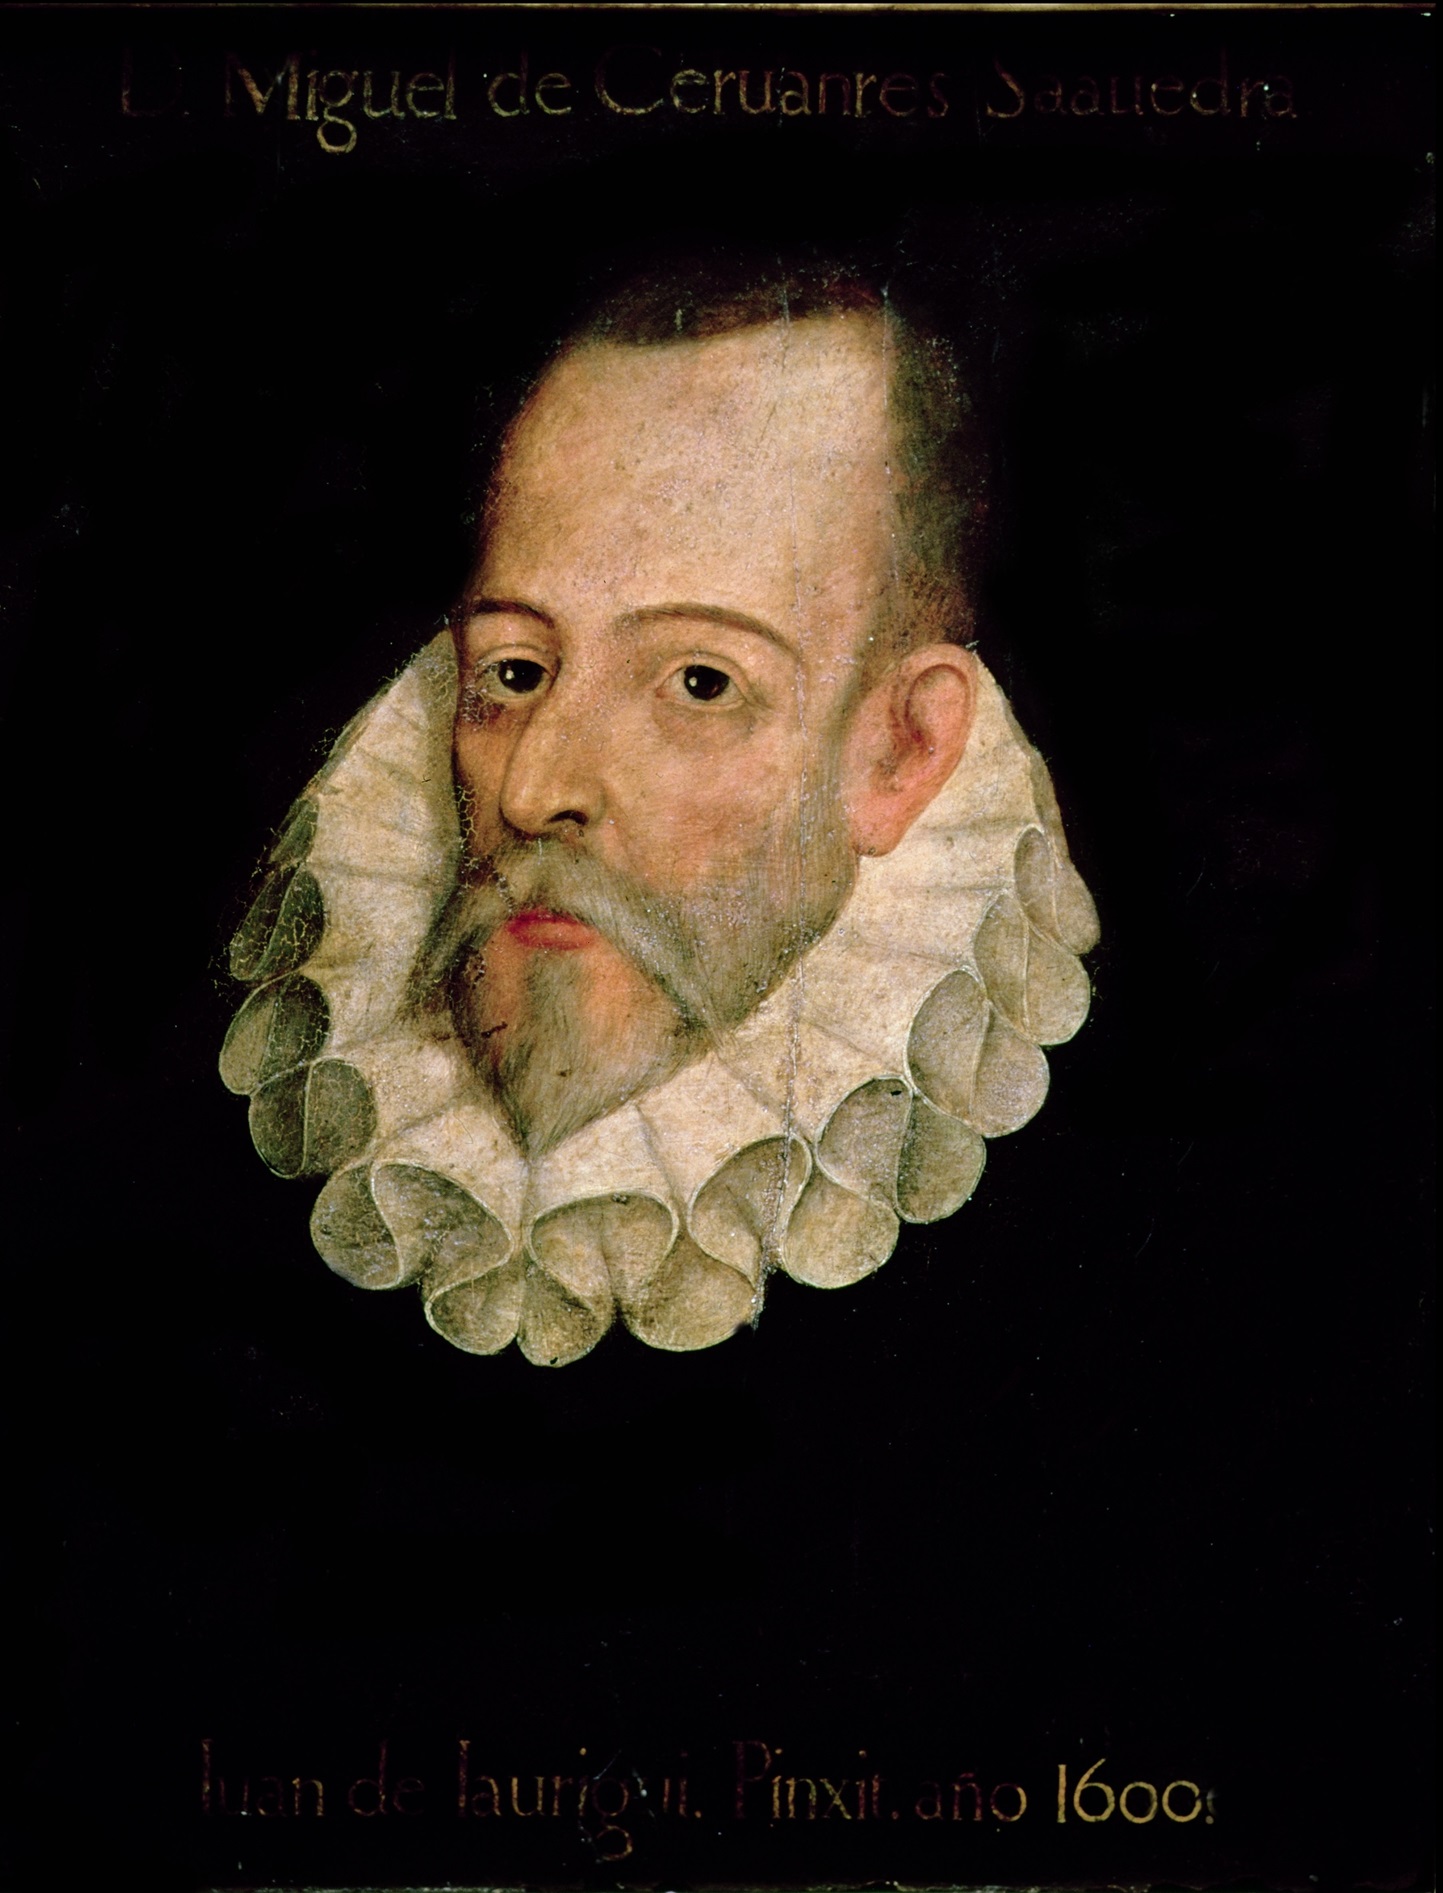 Miguela de Cervantesa